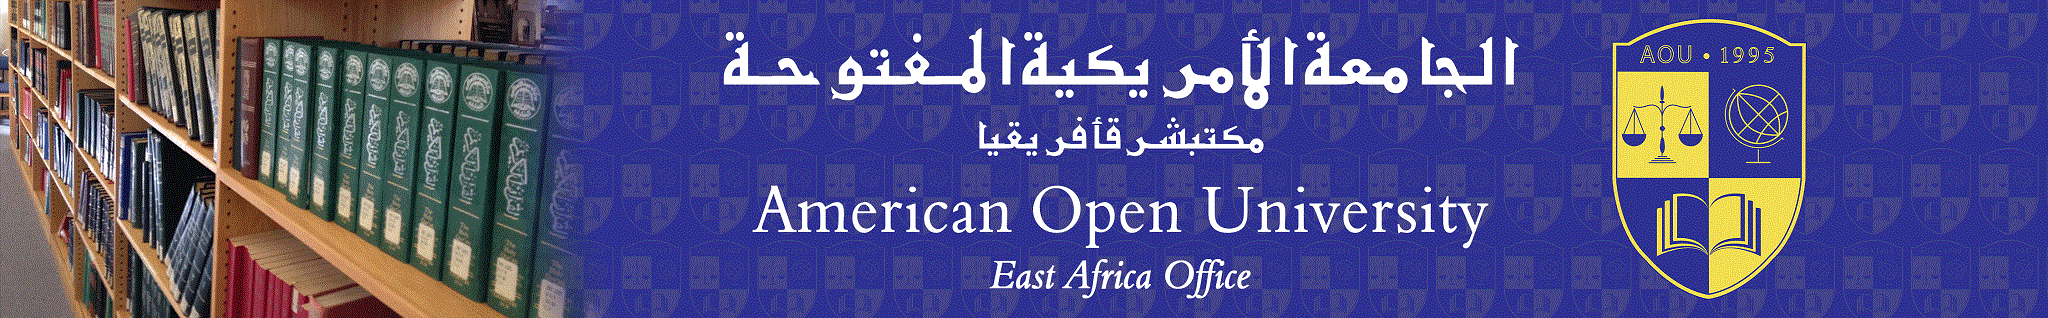 الموقع الرسمي للجامعة الأمريكية المفتوحة مكتب شرق إفريقيا